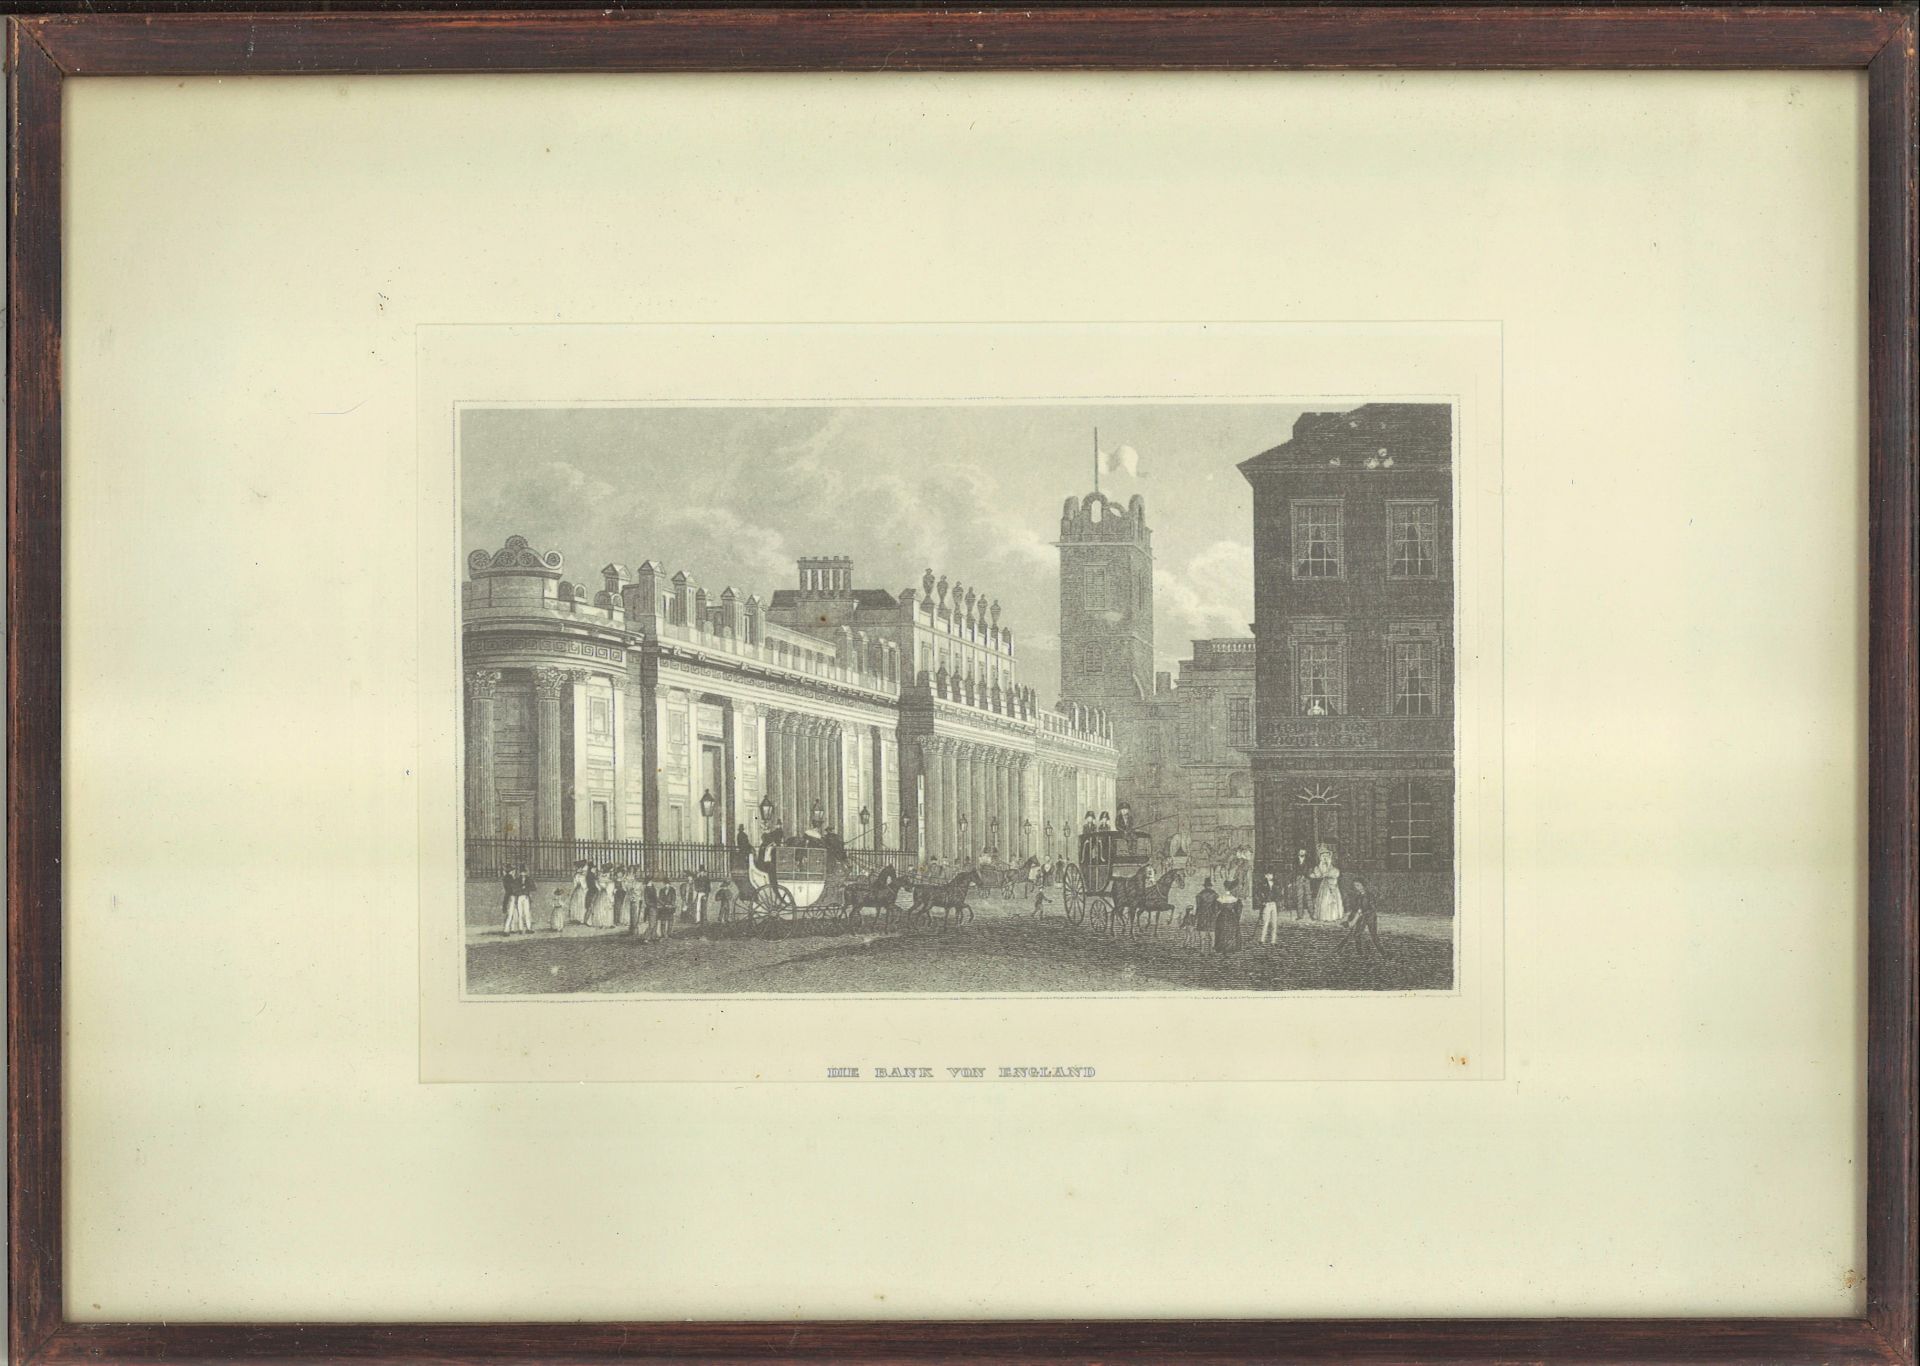 Stahlstich "Die Bank von England", Blattgröße: ca. B 18 cm x 12,5 cm, hinter Glas gerahmt,